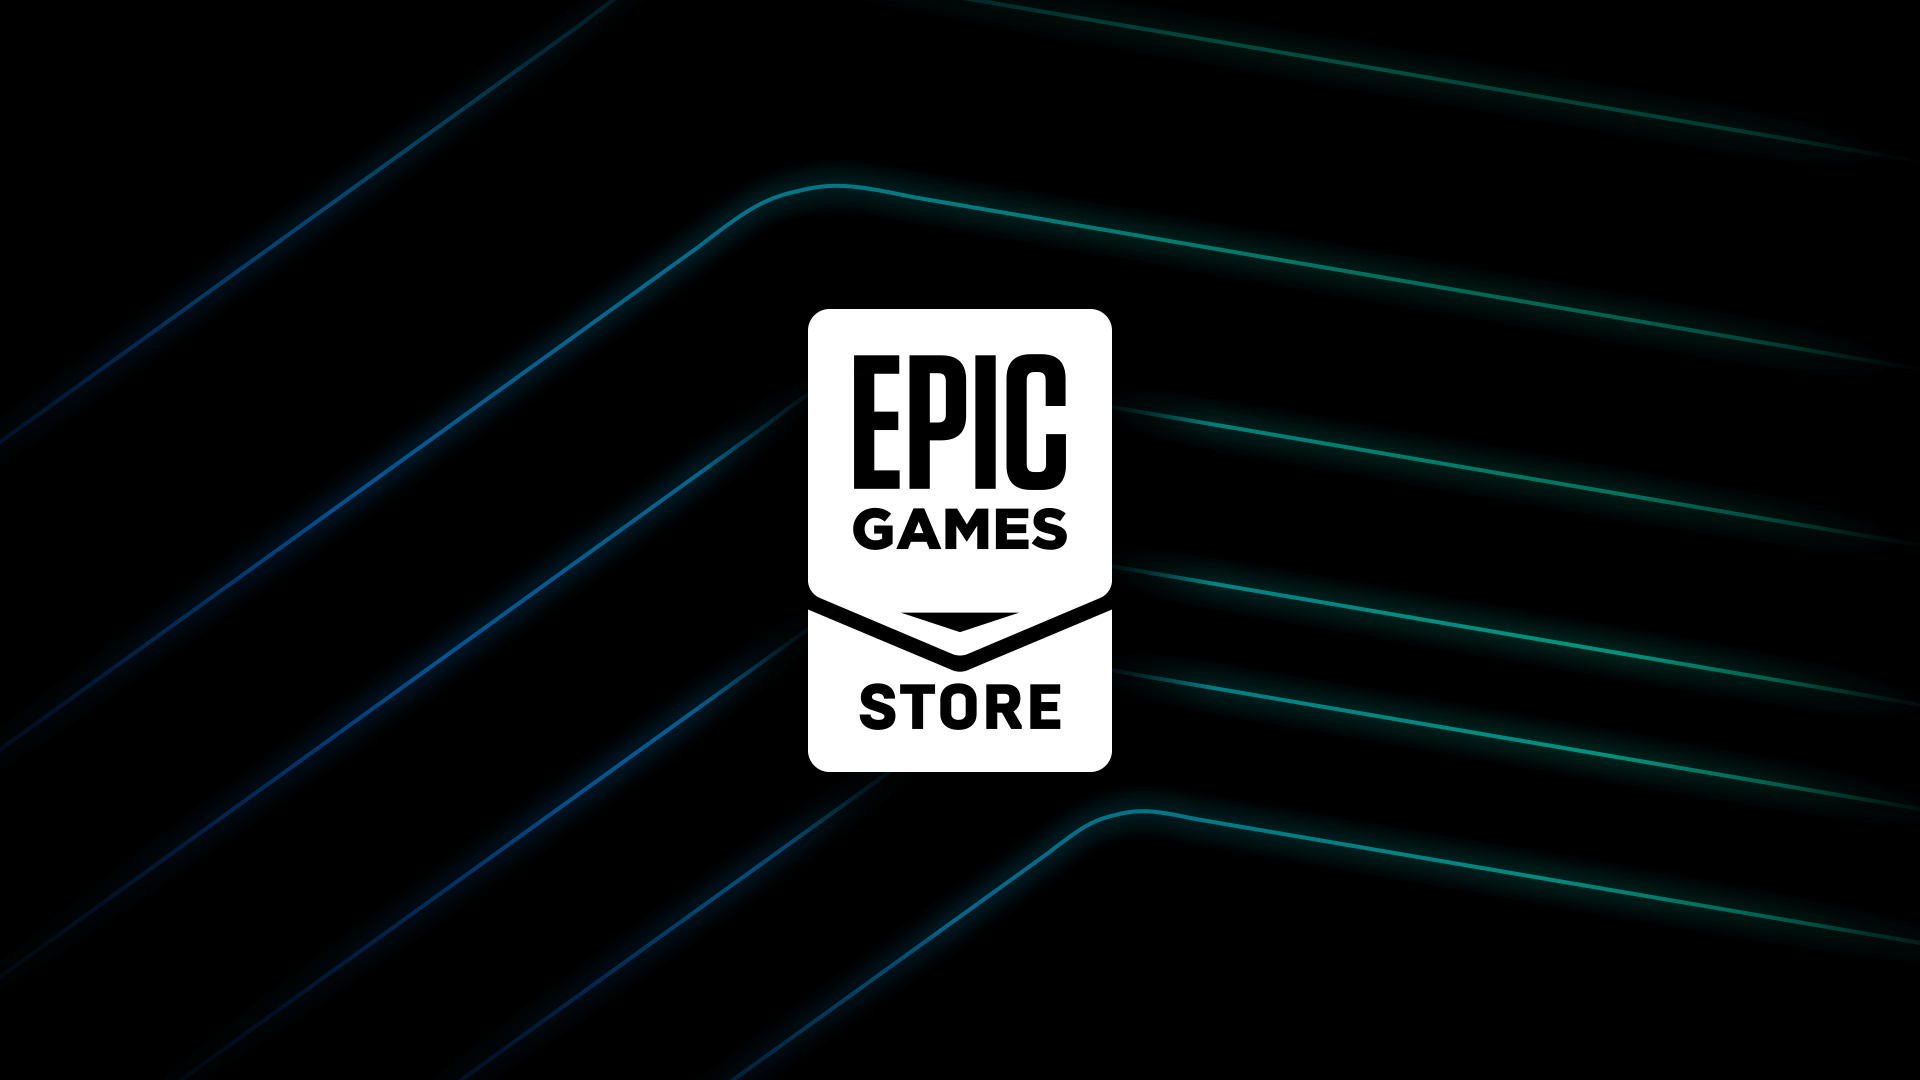 Zelfs vijf jaar na de lancering is de Epic Games Store nog steeds niet winstgevend